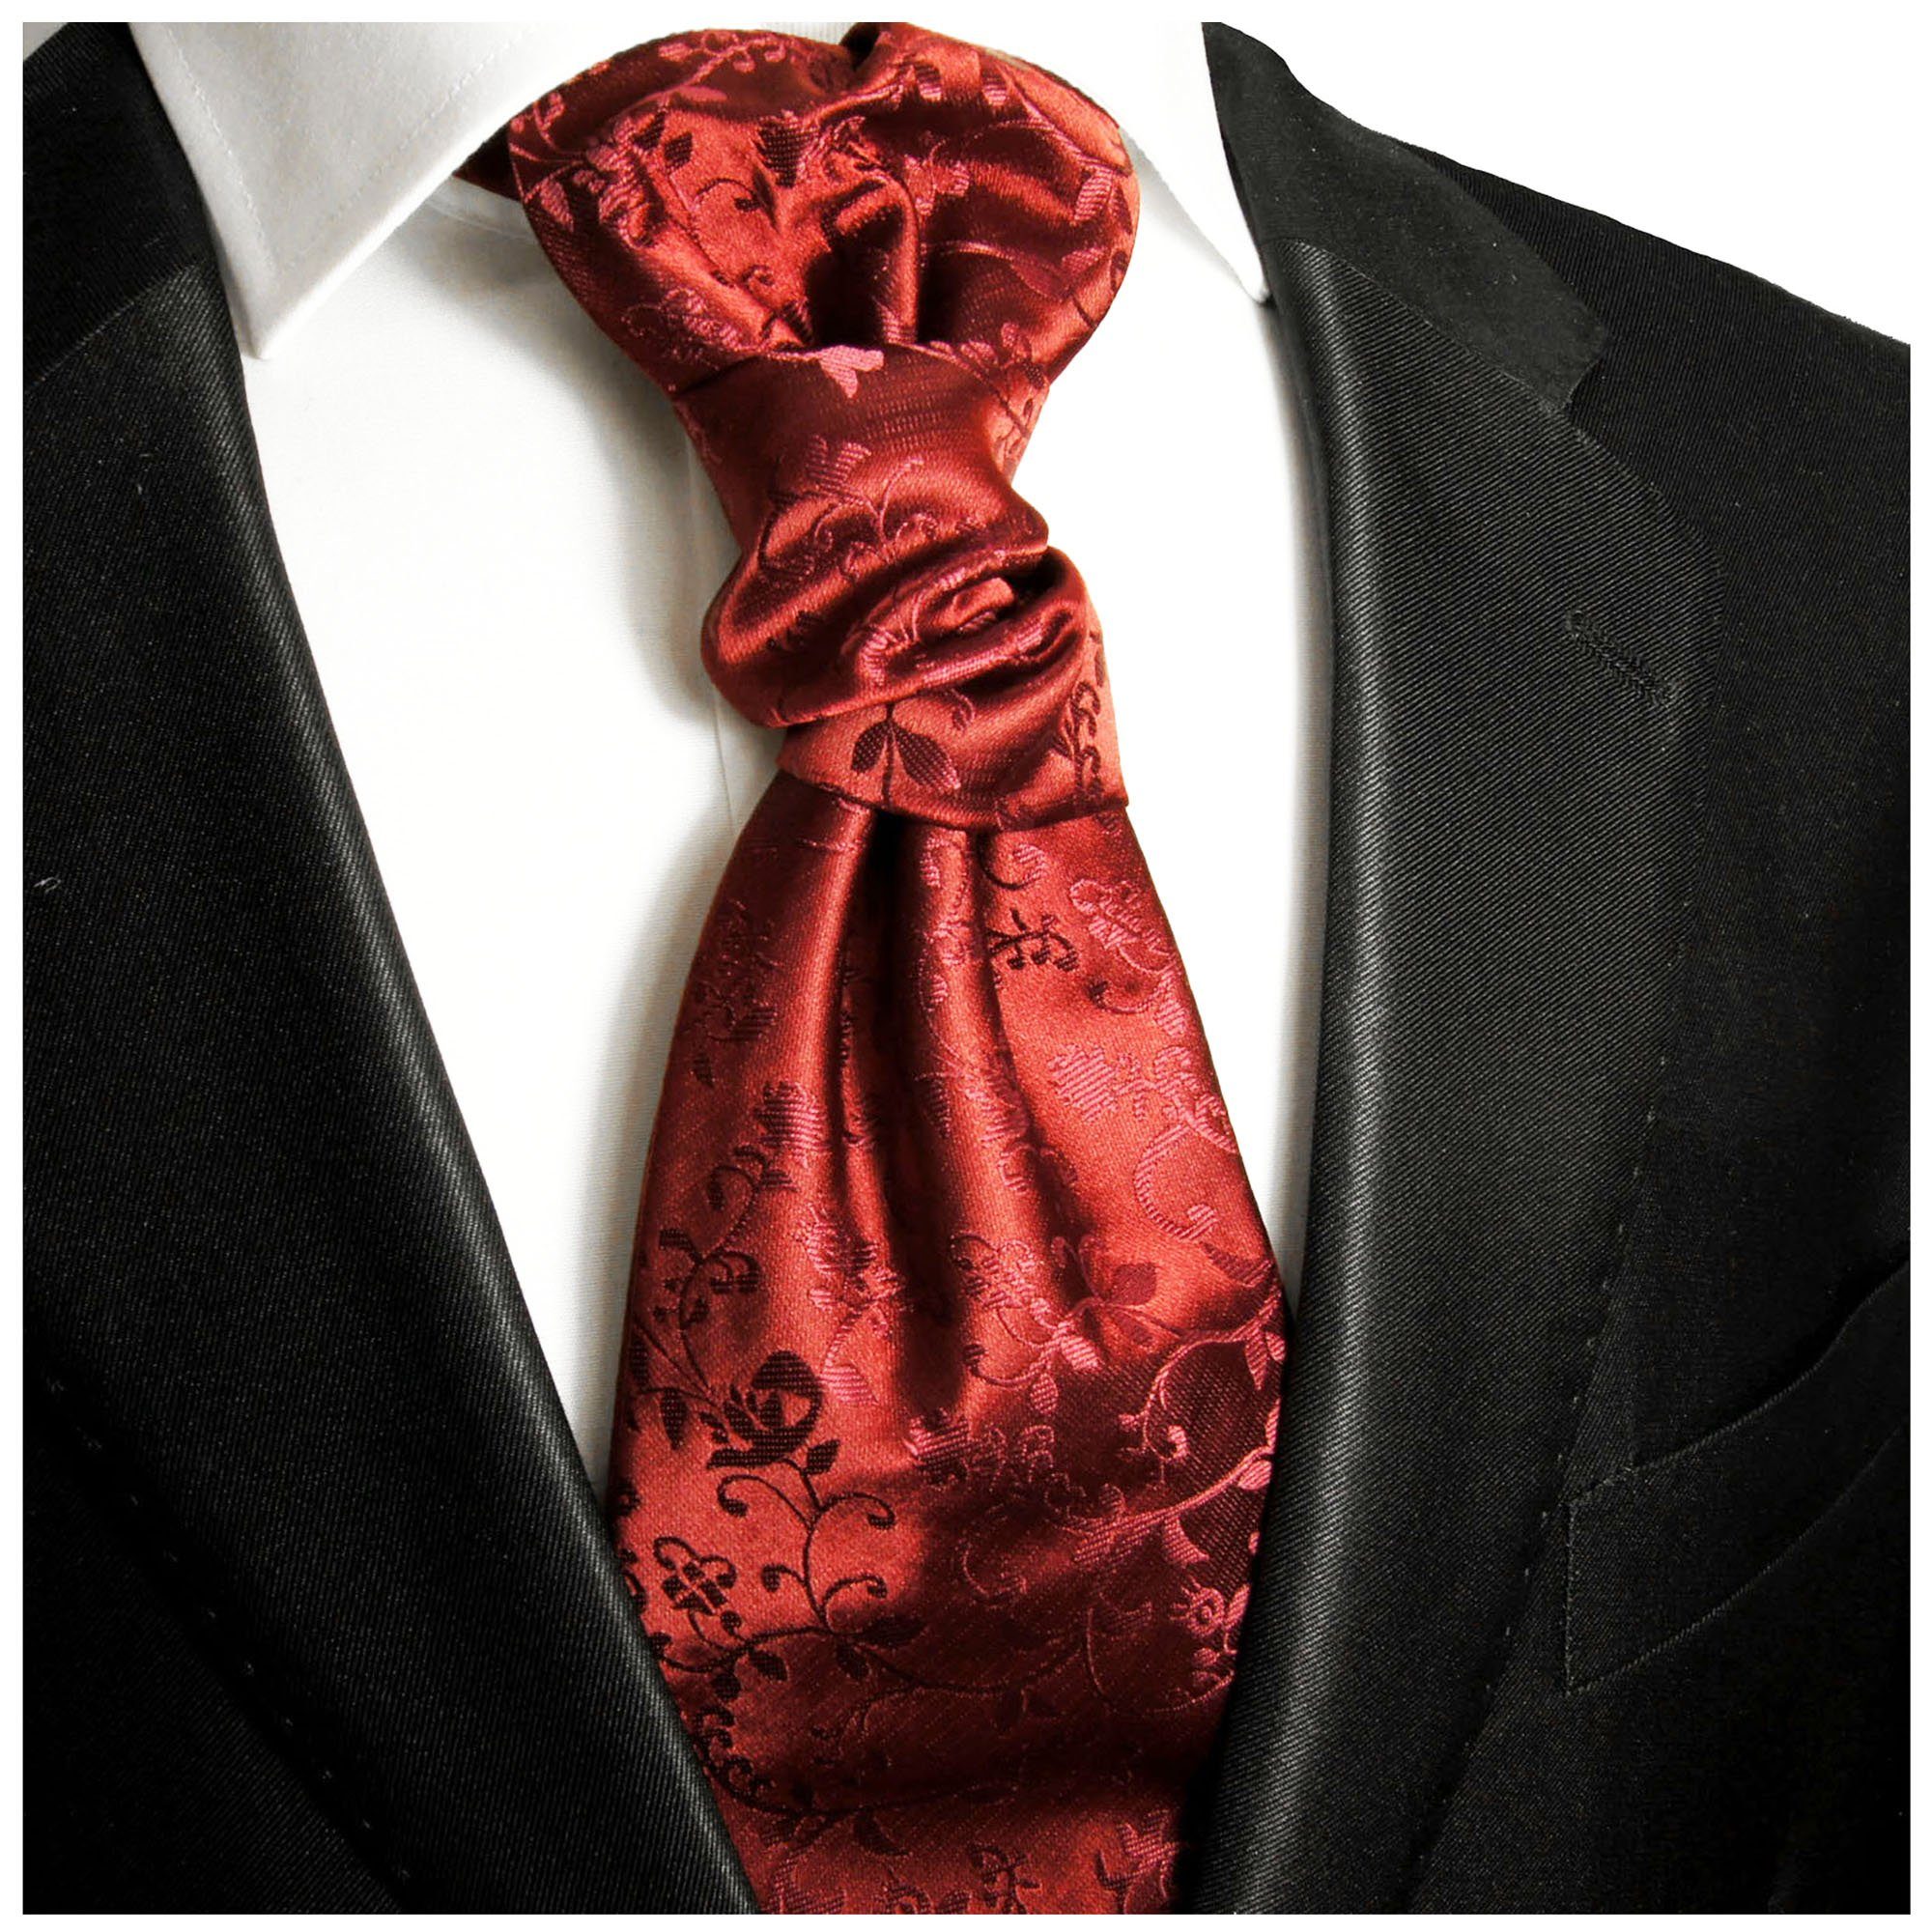 Paul Elegantes vorgebunden Krawatte floral Plastron rot Herren Hochzeitskrawatte - v95 Malone